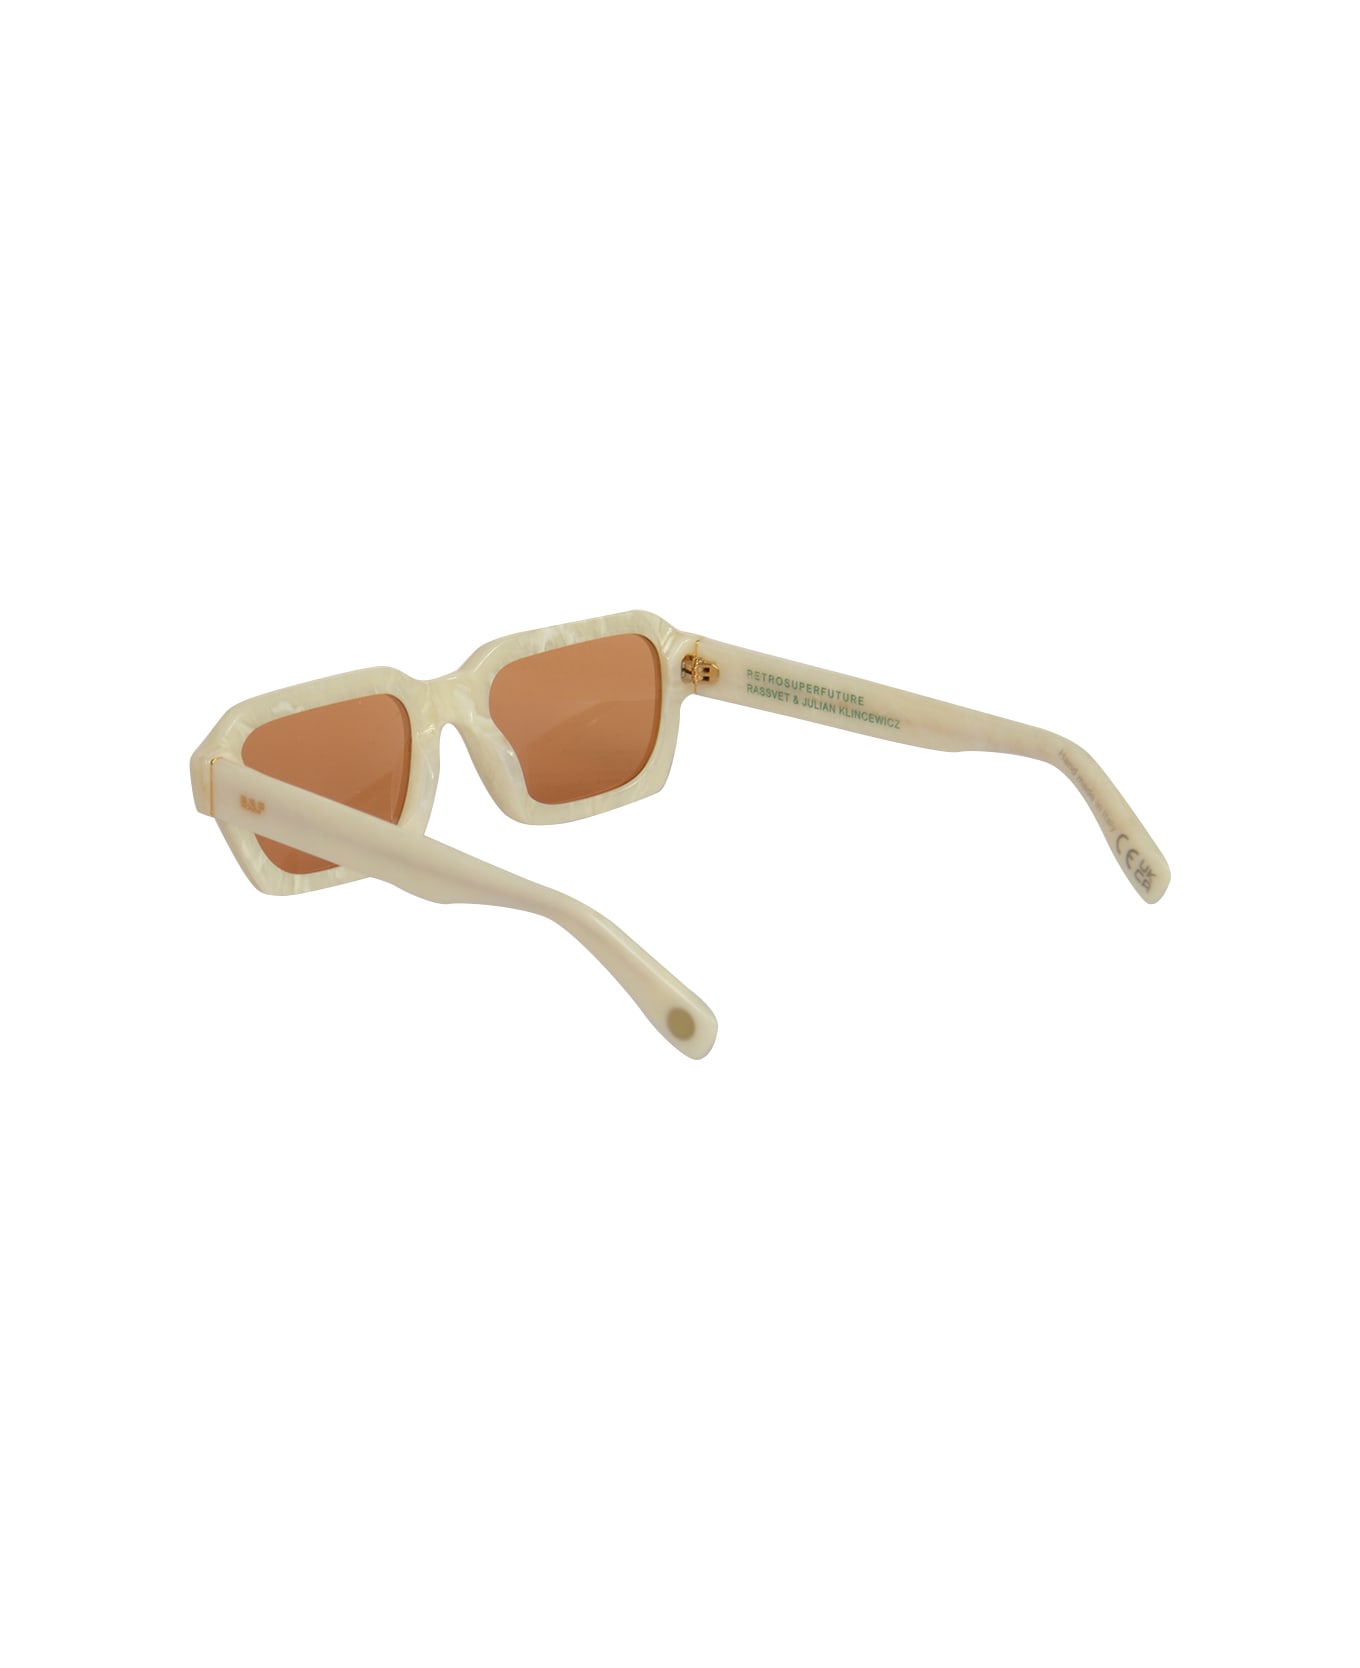 PACCBET Retro Super Future Sunglasses - White